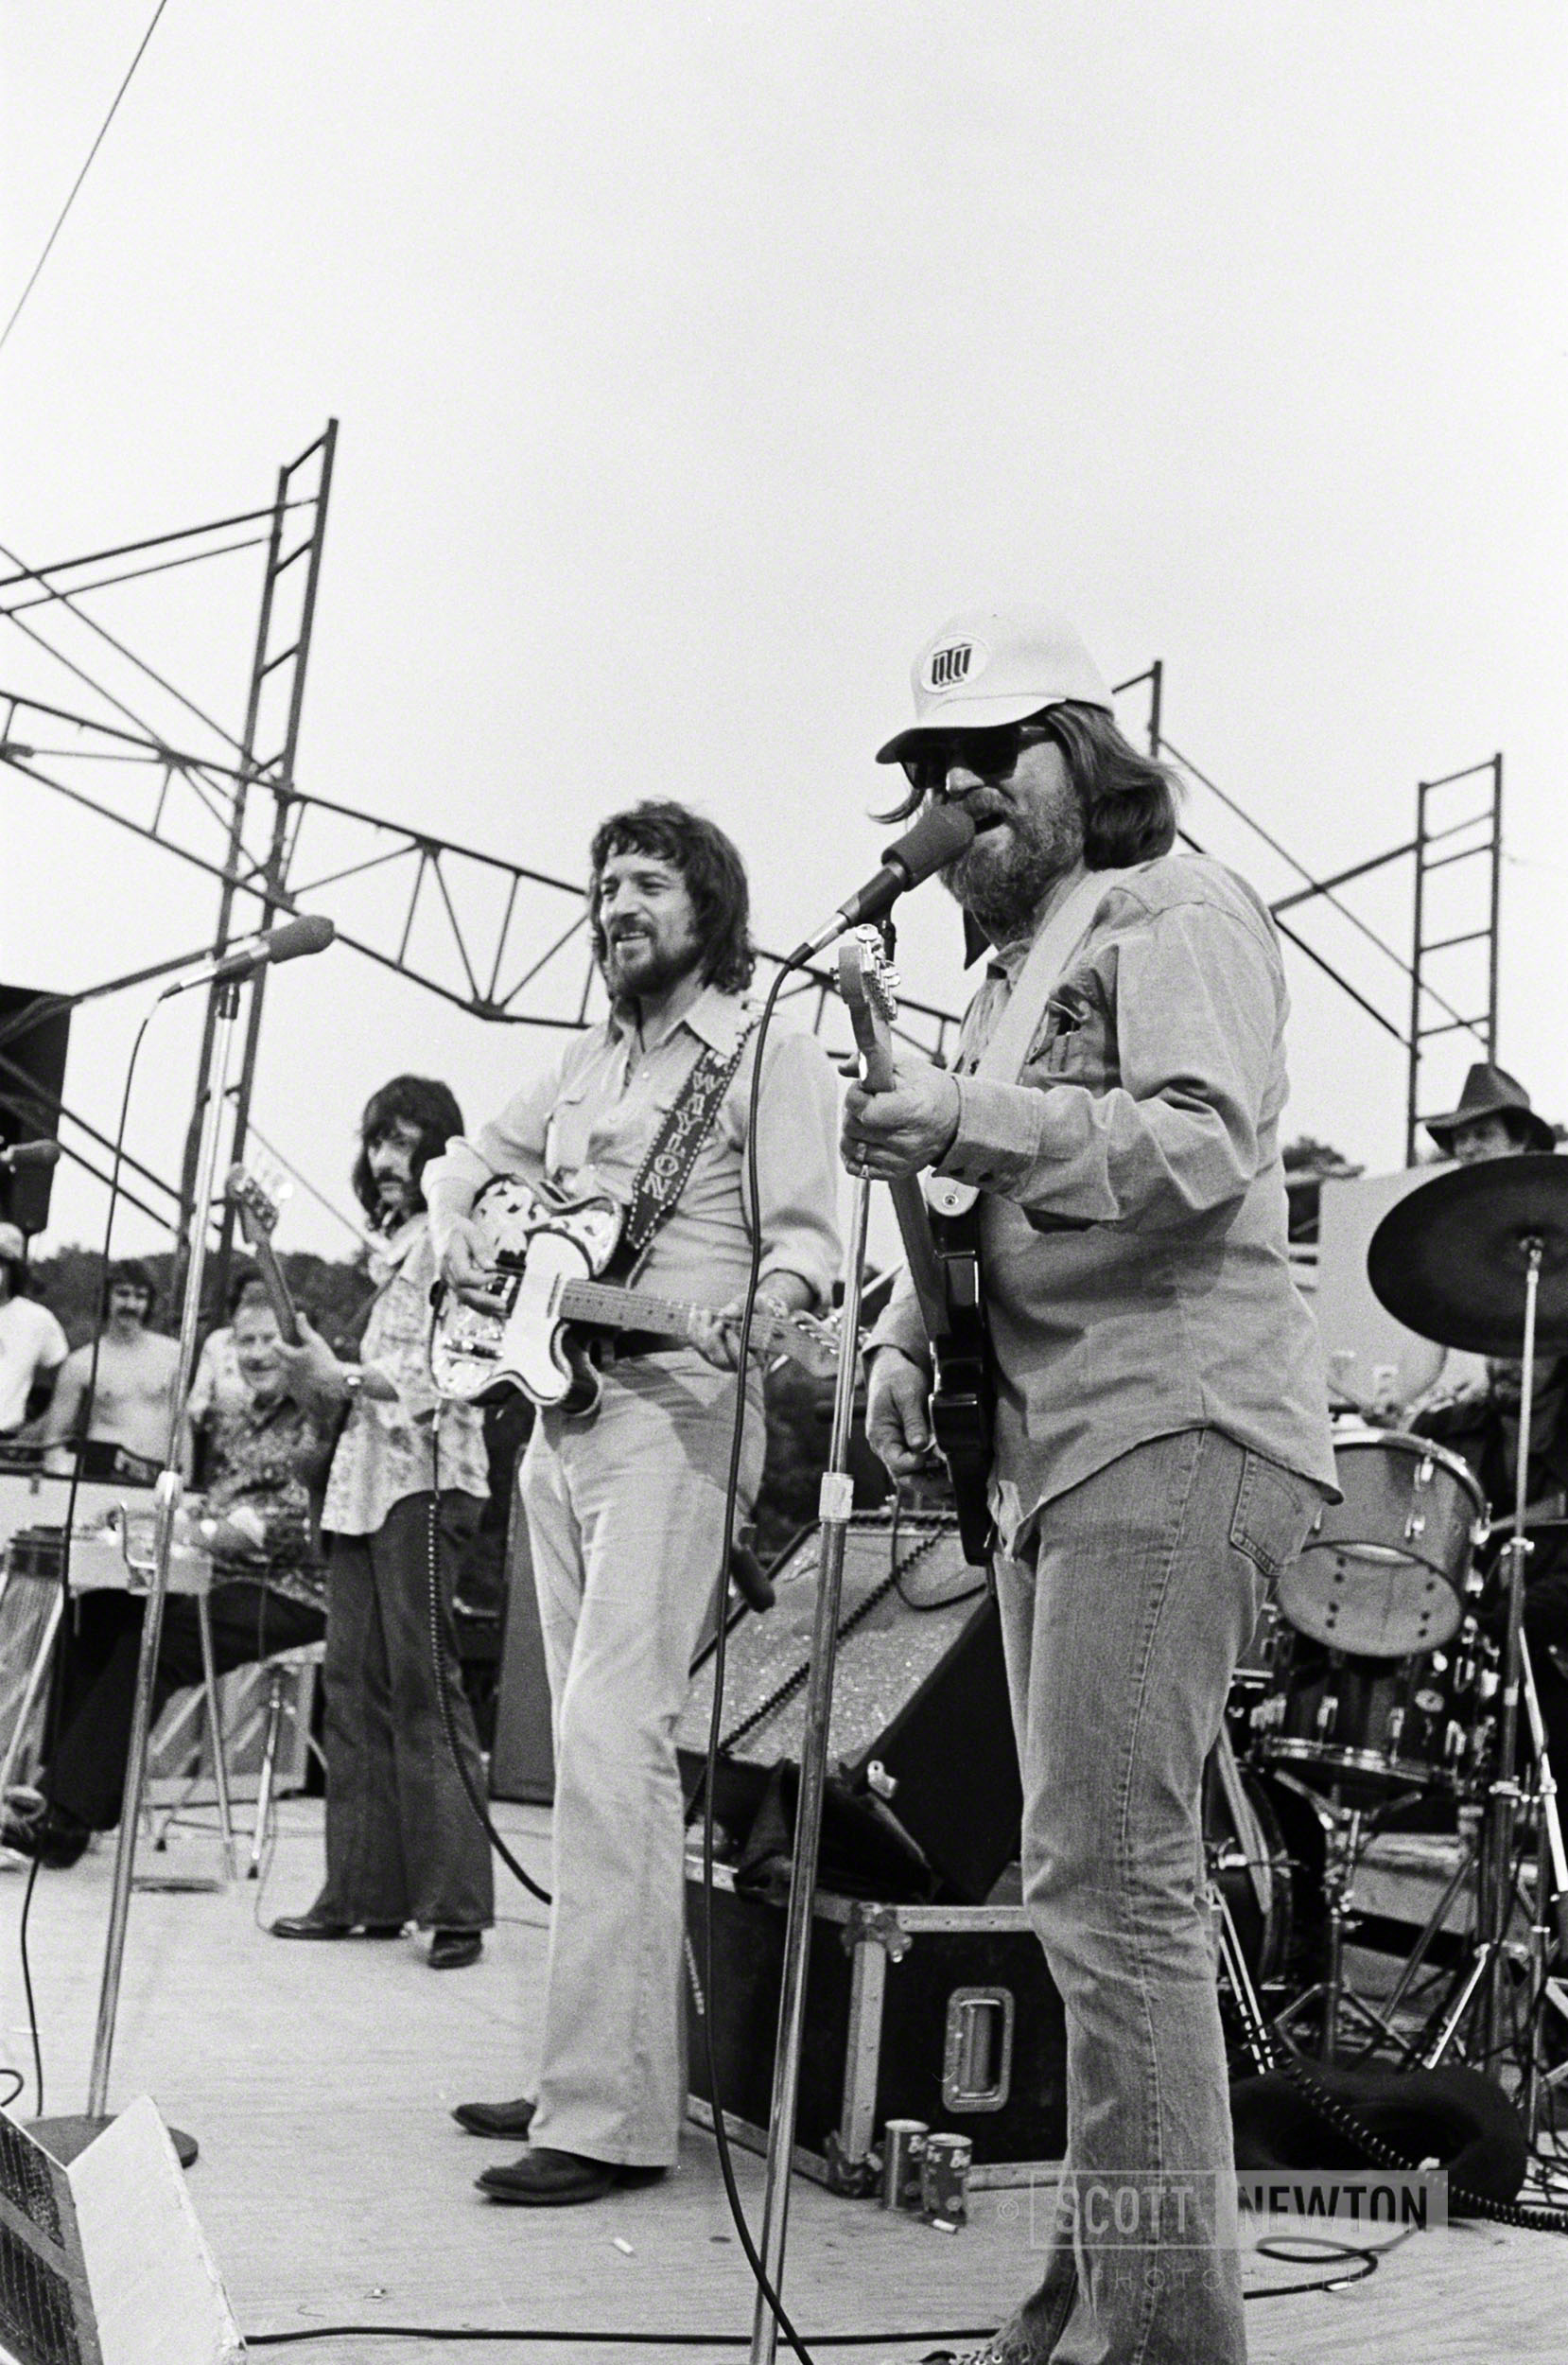 Willie and Waylon, Bull Creek, 1974